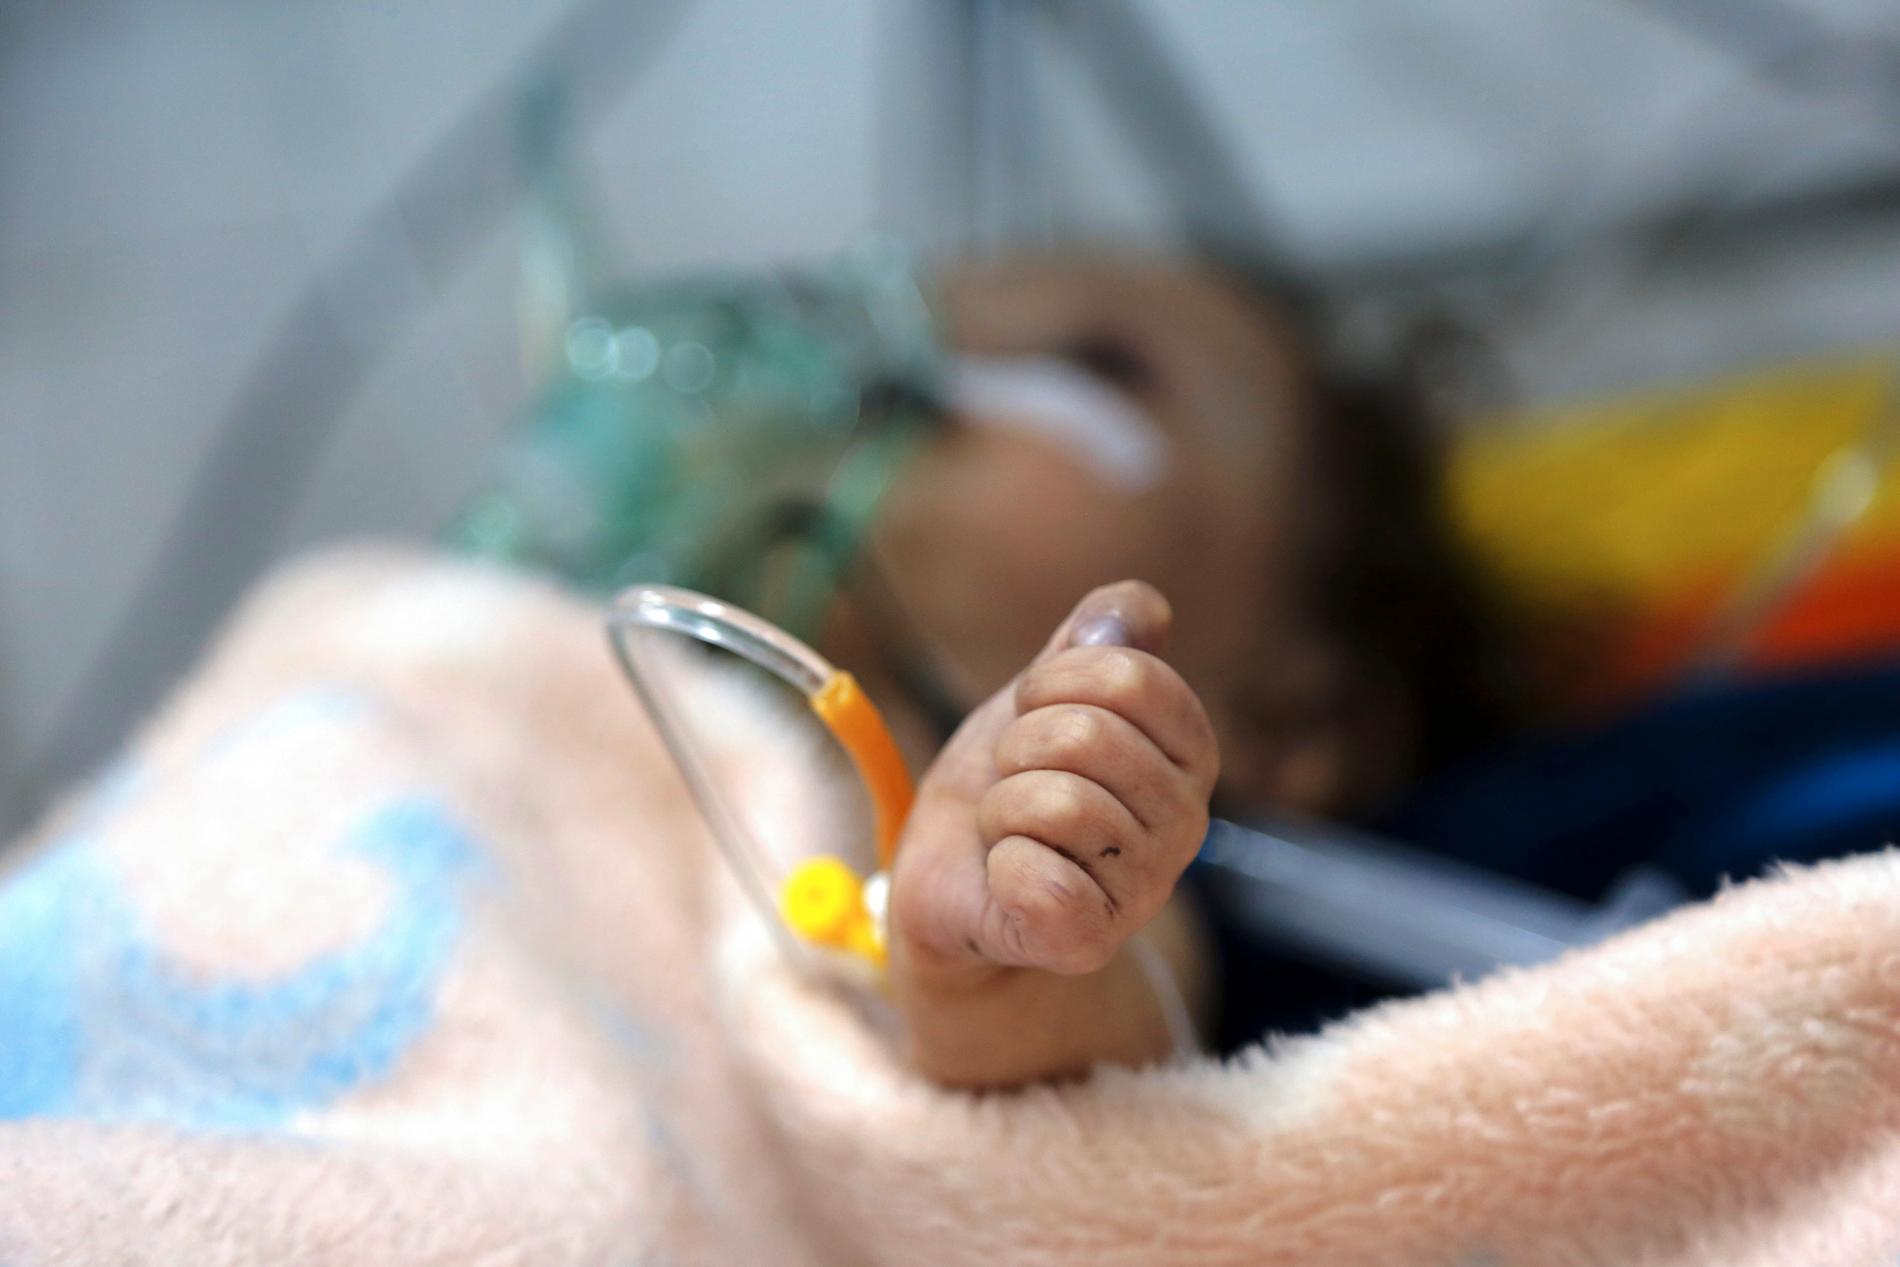 Sedan kriget i Jemen trappades upp i mars 2015 har det fötts tre miljoner barn i landet, enligt Unicef. Över 5 000 av dem har skadats eller dödats och sammantaget är elva miljoner barn i behov av humanitärt bistånd. Arkivbild.